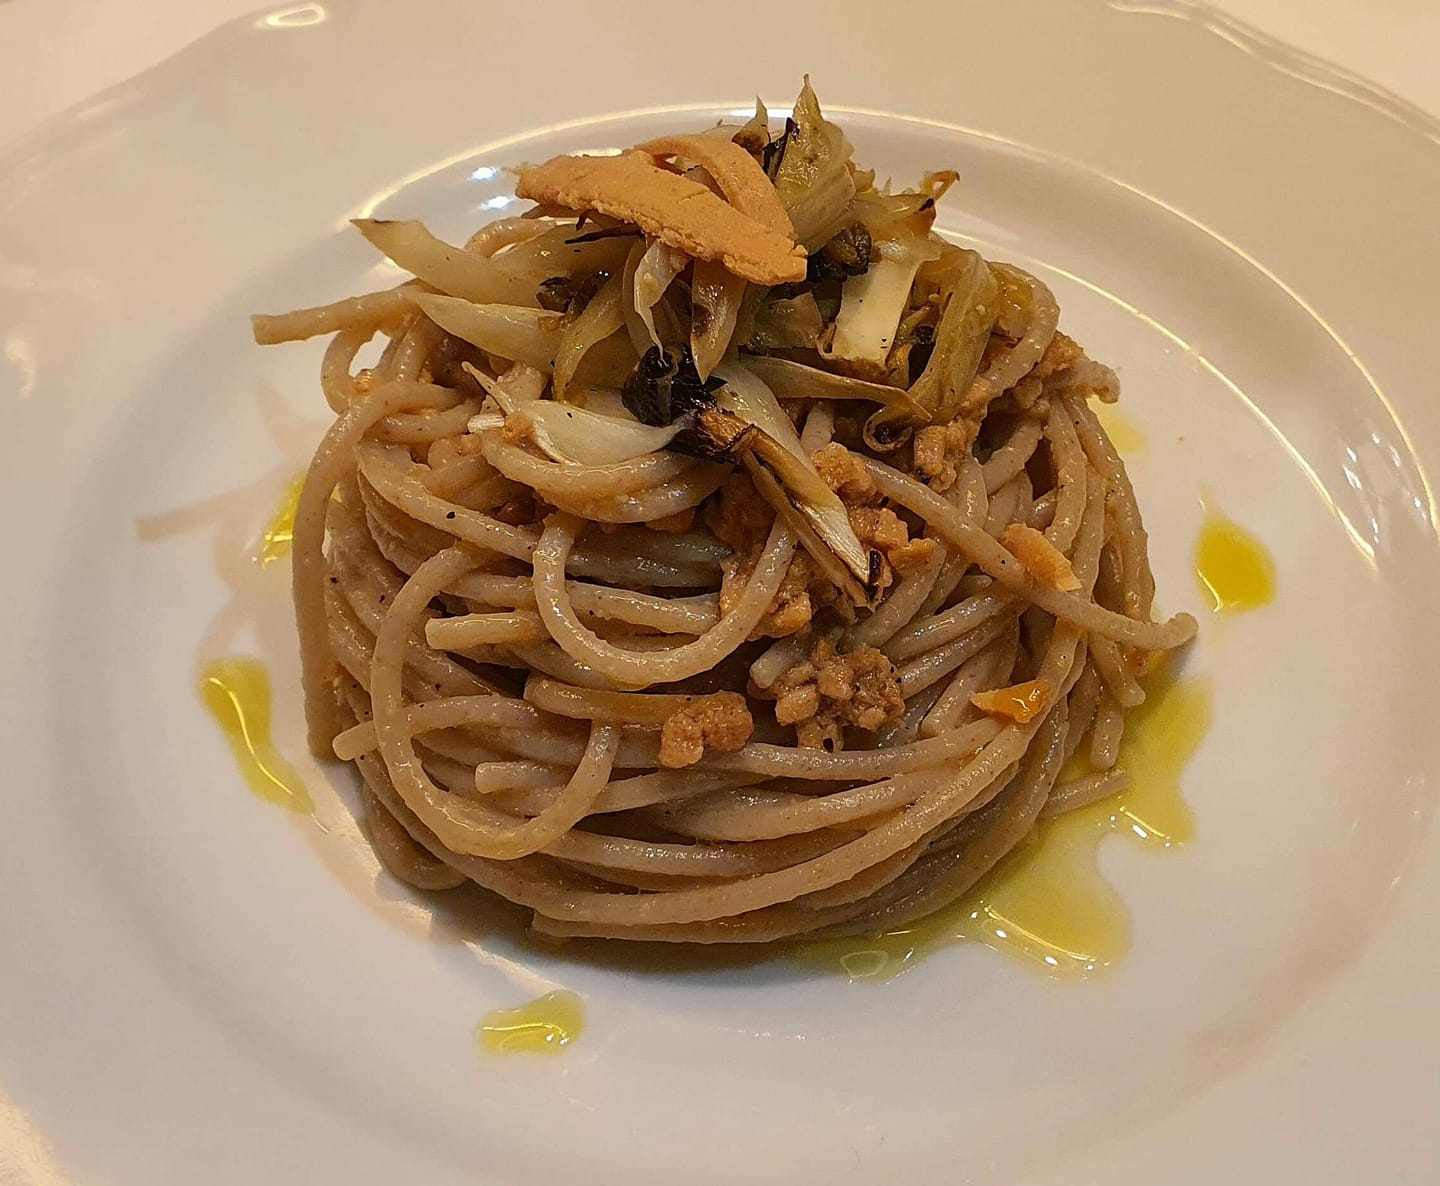 Dove mangiare a Milazzo, 8 ristoranti consigliati a Milazzo, Ristorante, Ristorante Macchianera, Primo Piatto, Pasta, Spaghetti